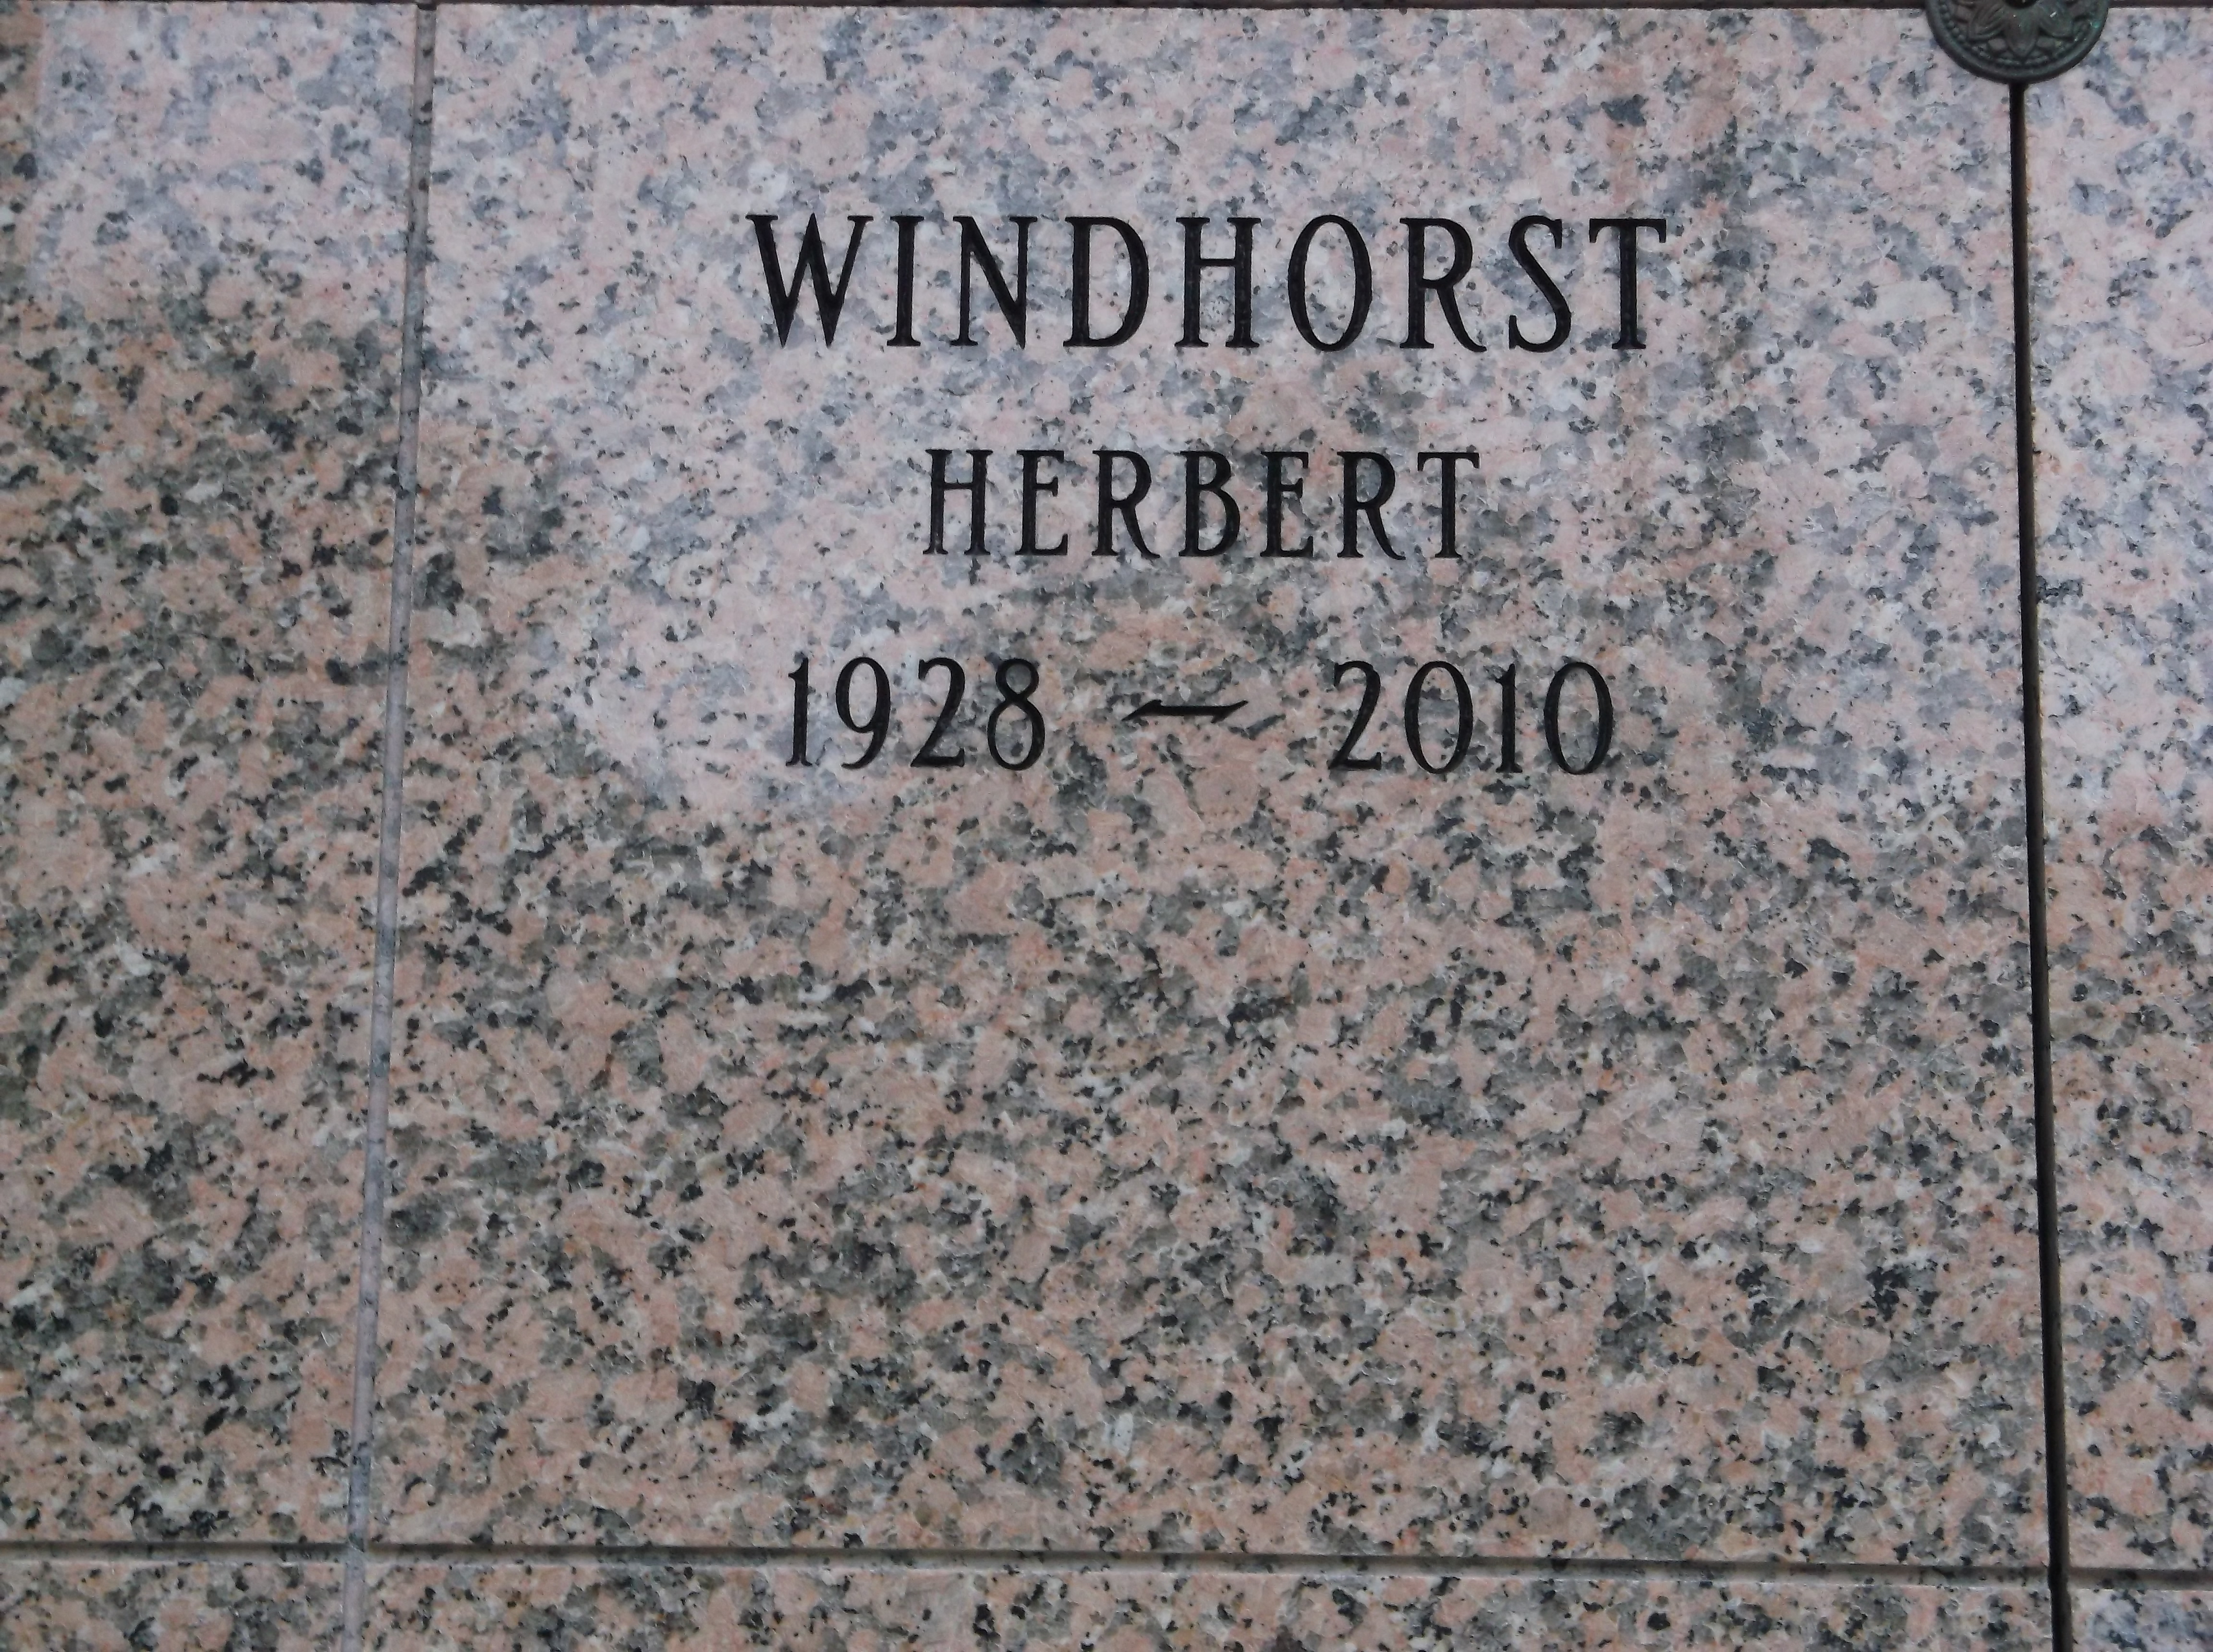 Herbert Windhorst